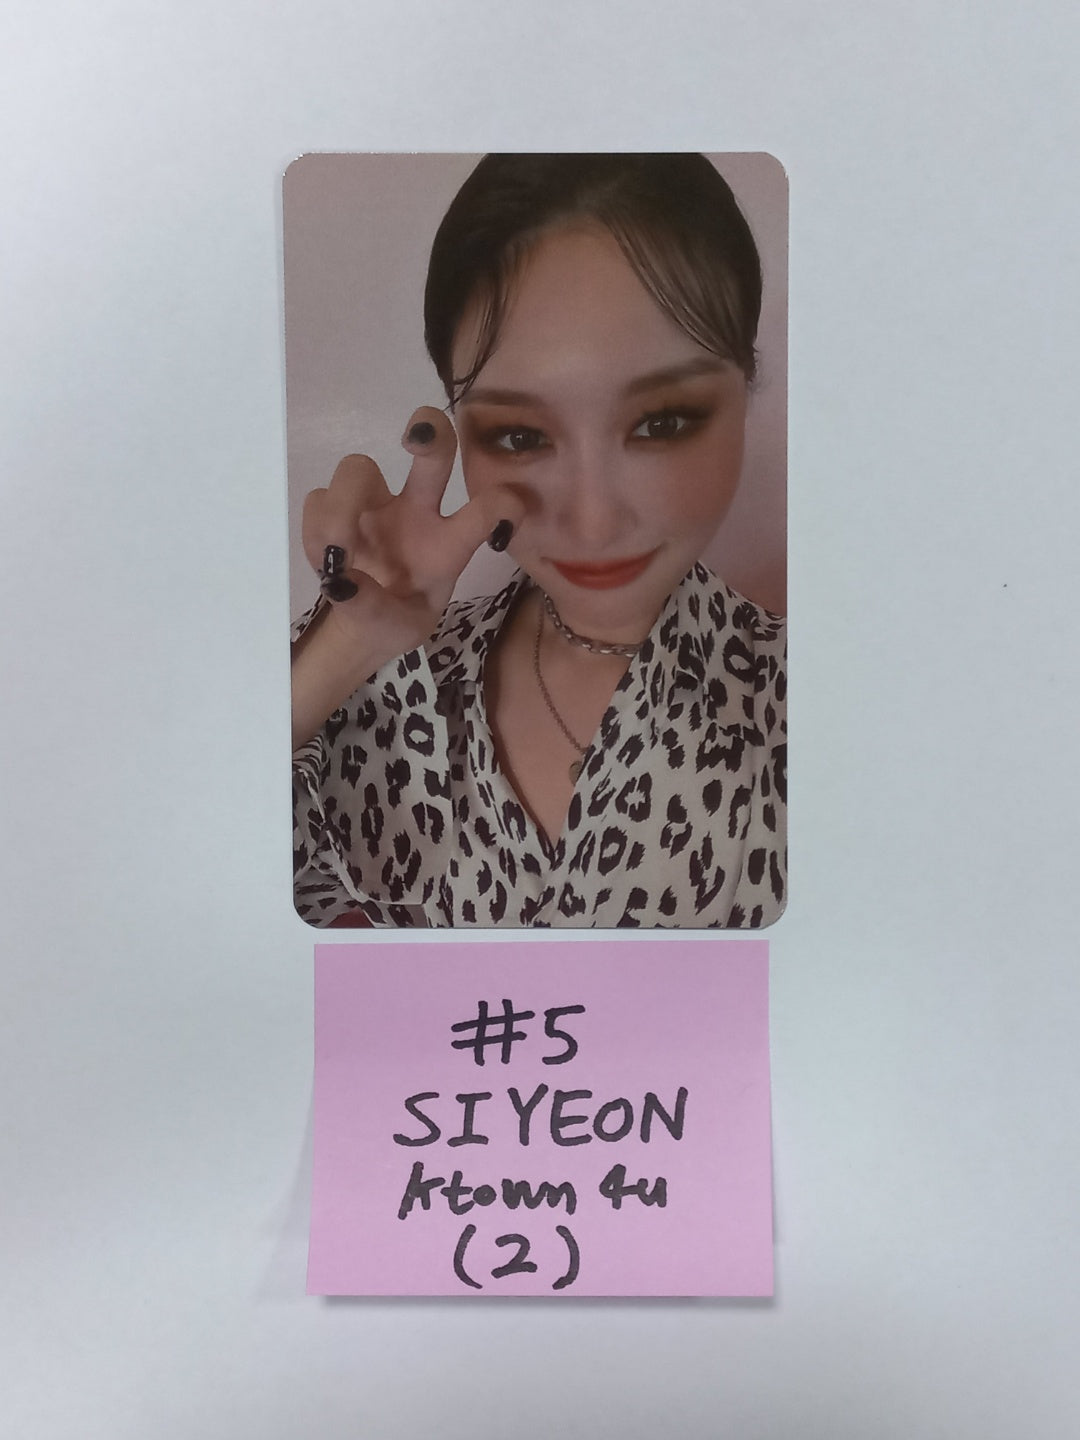 드림캐쳐 "컨셉북" - Ktown4U 예약판매 혜택 포토카드